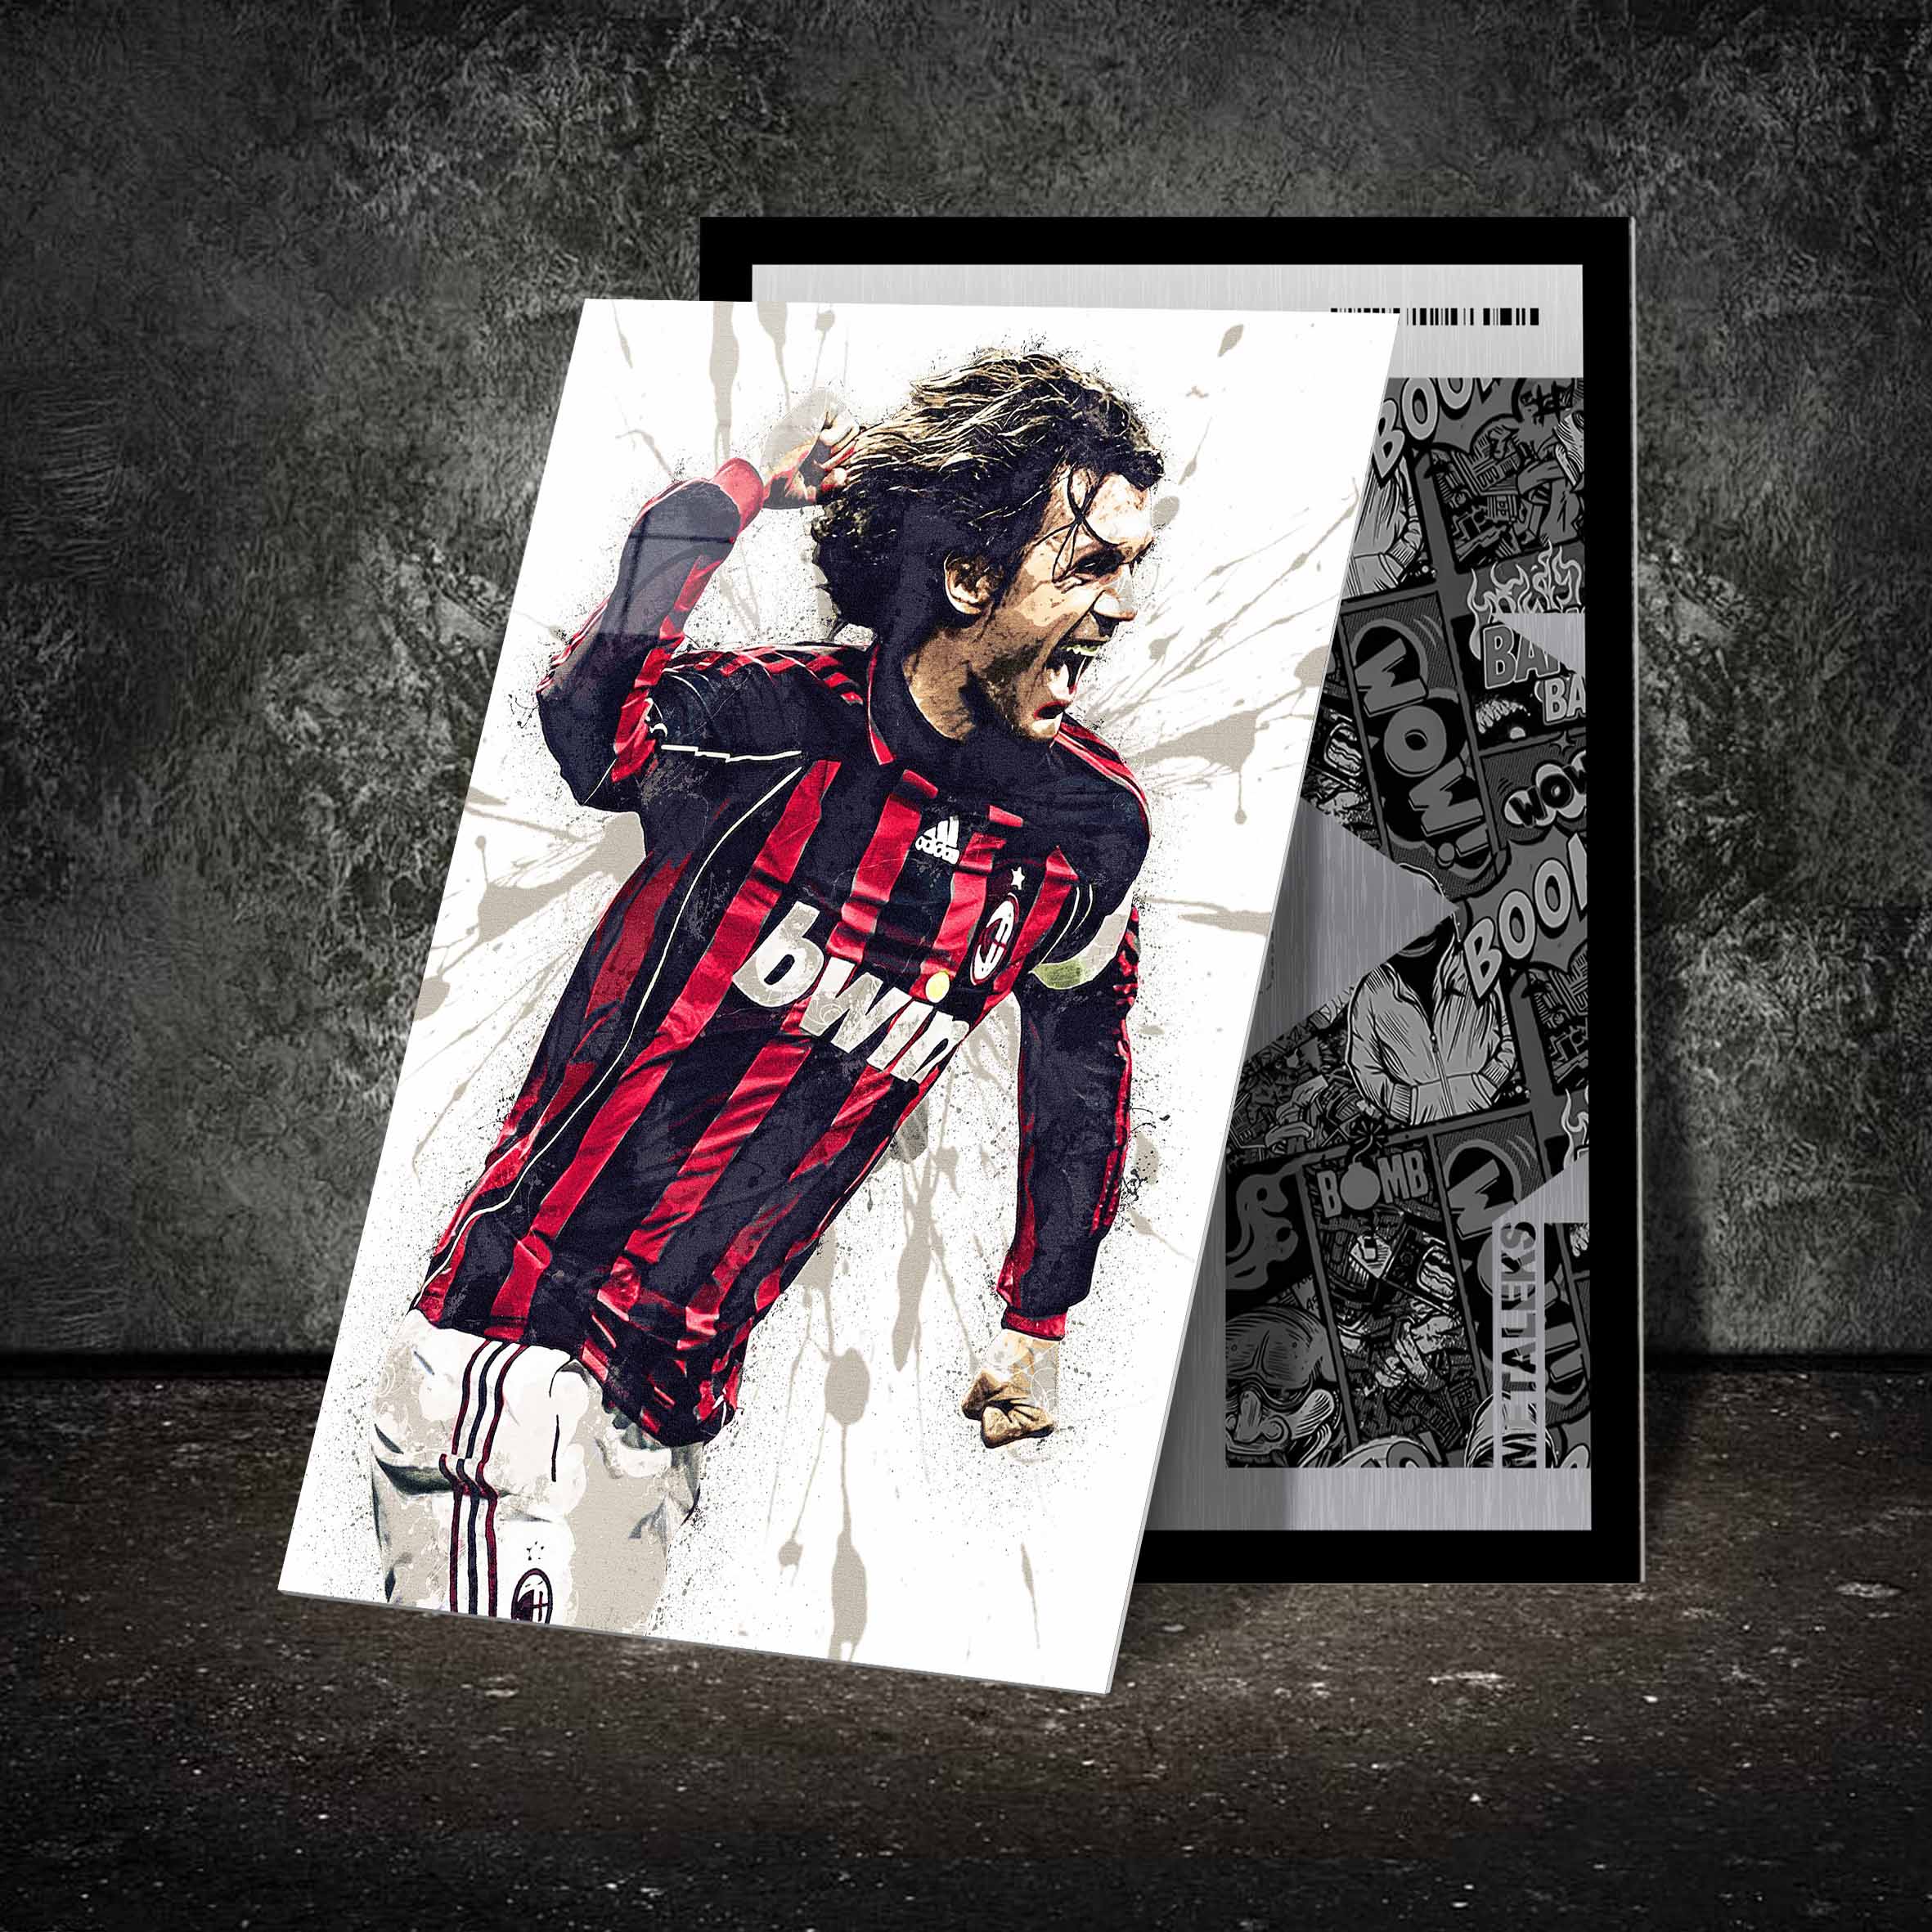 Paolo Maldini AC Milan poster